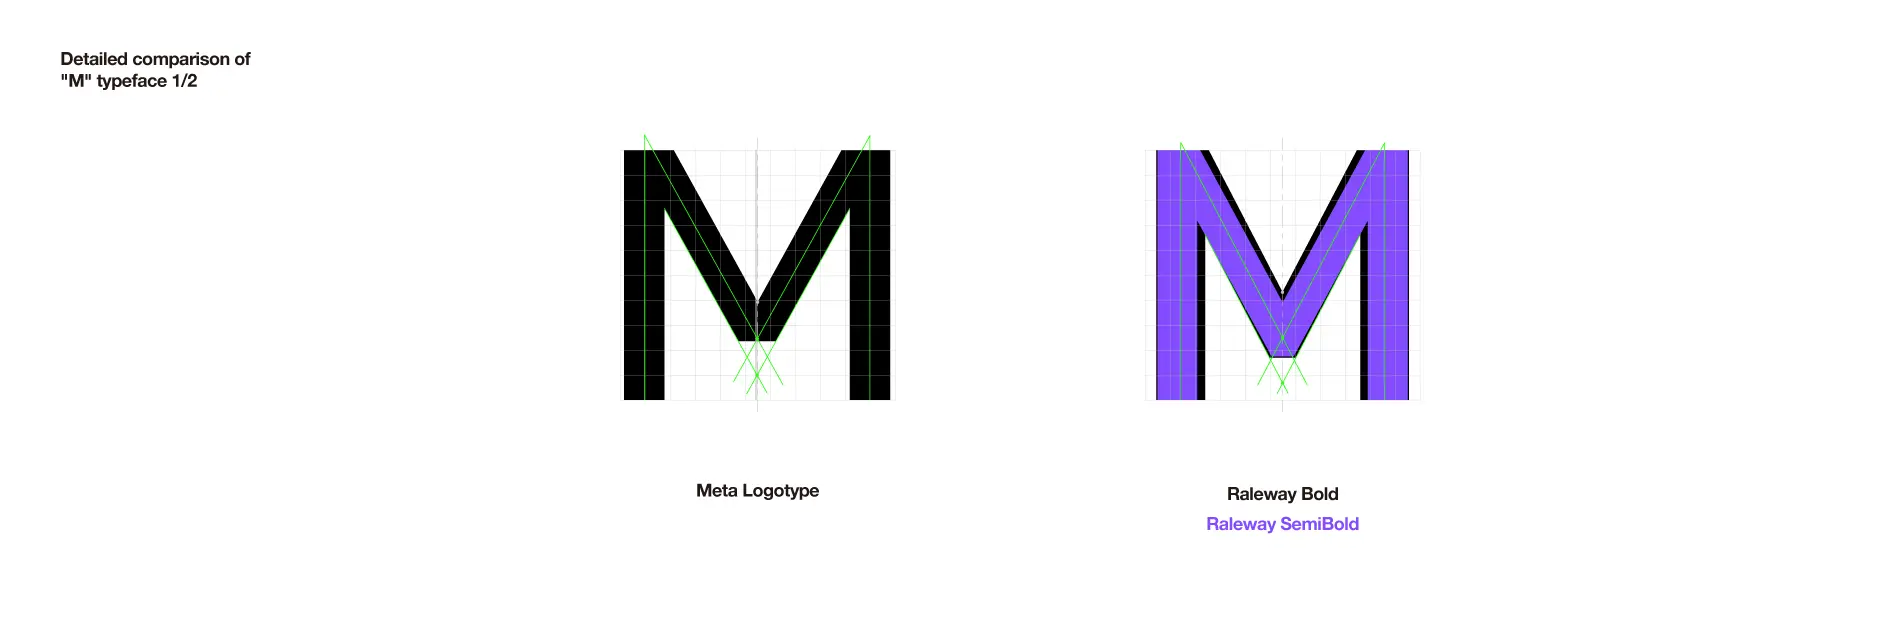 Meta（メタ）のロゴタイプデザイン刷新事例 グリッド分析とロゴタイプ比較 M文字の詳細分析